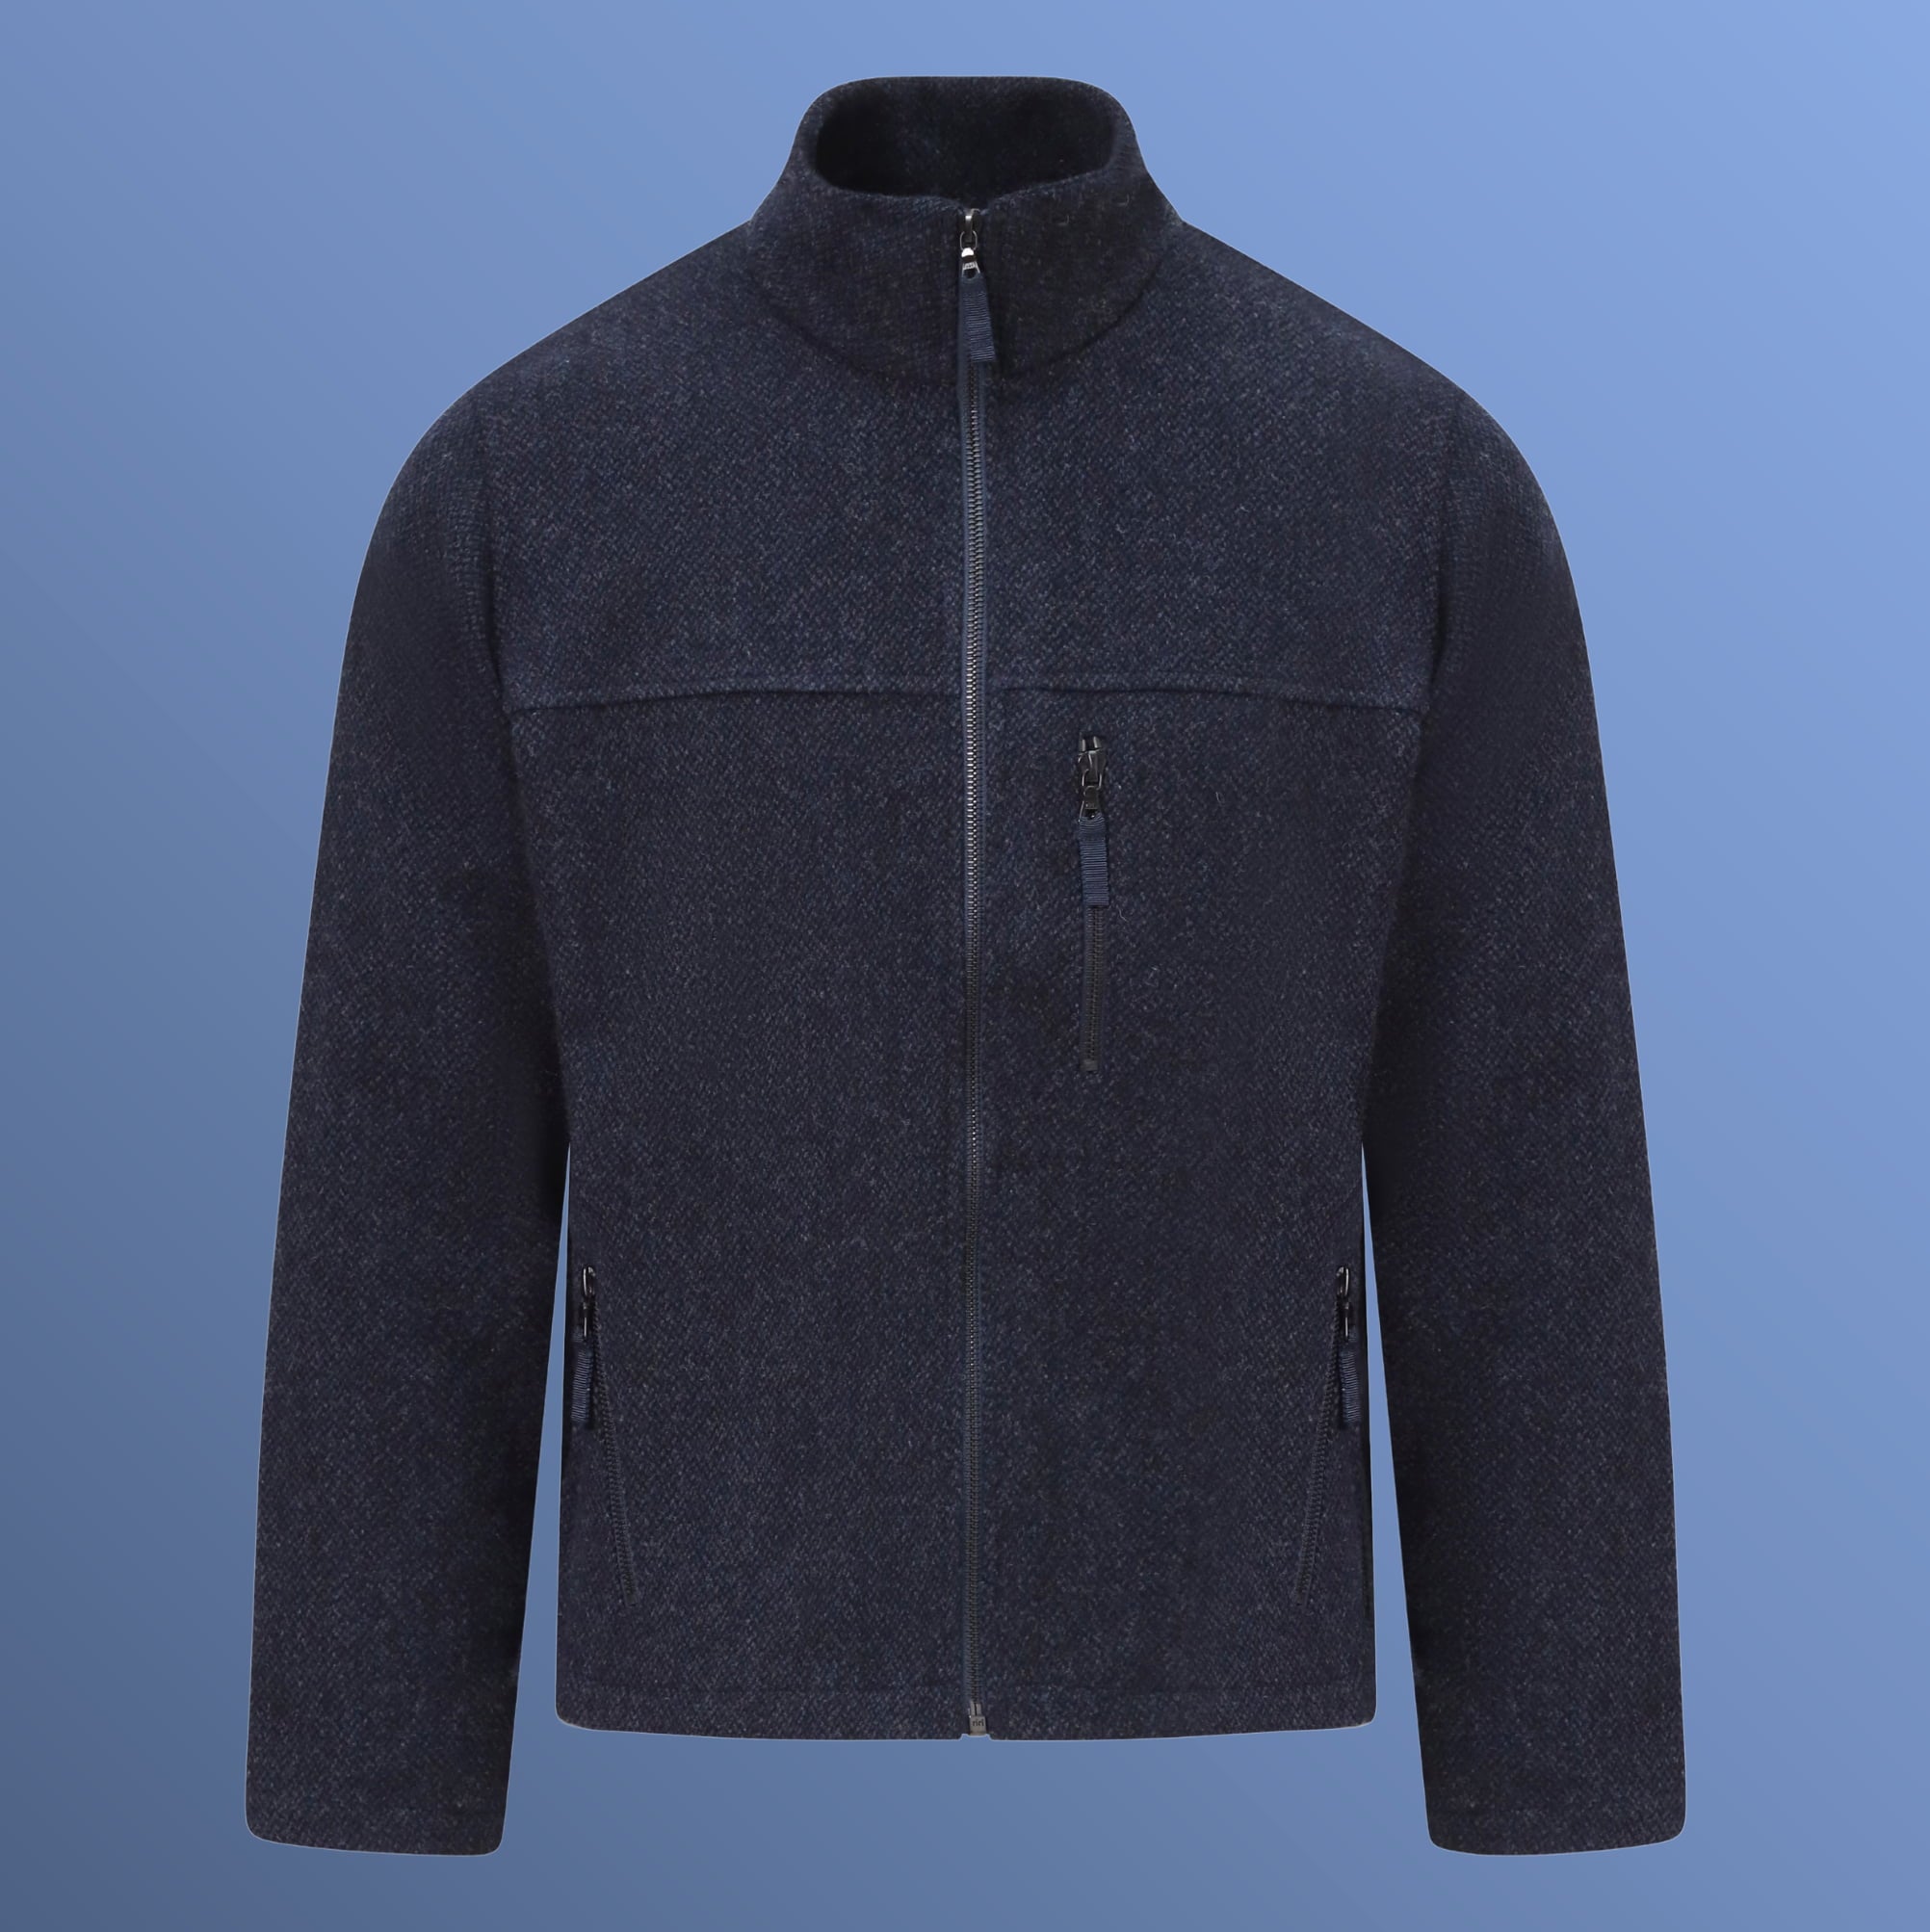 Men's Merino Wool Jacket Fleece Jacket